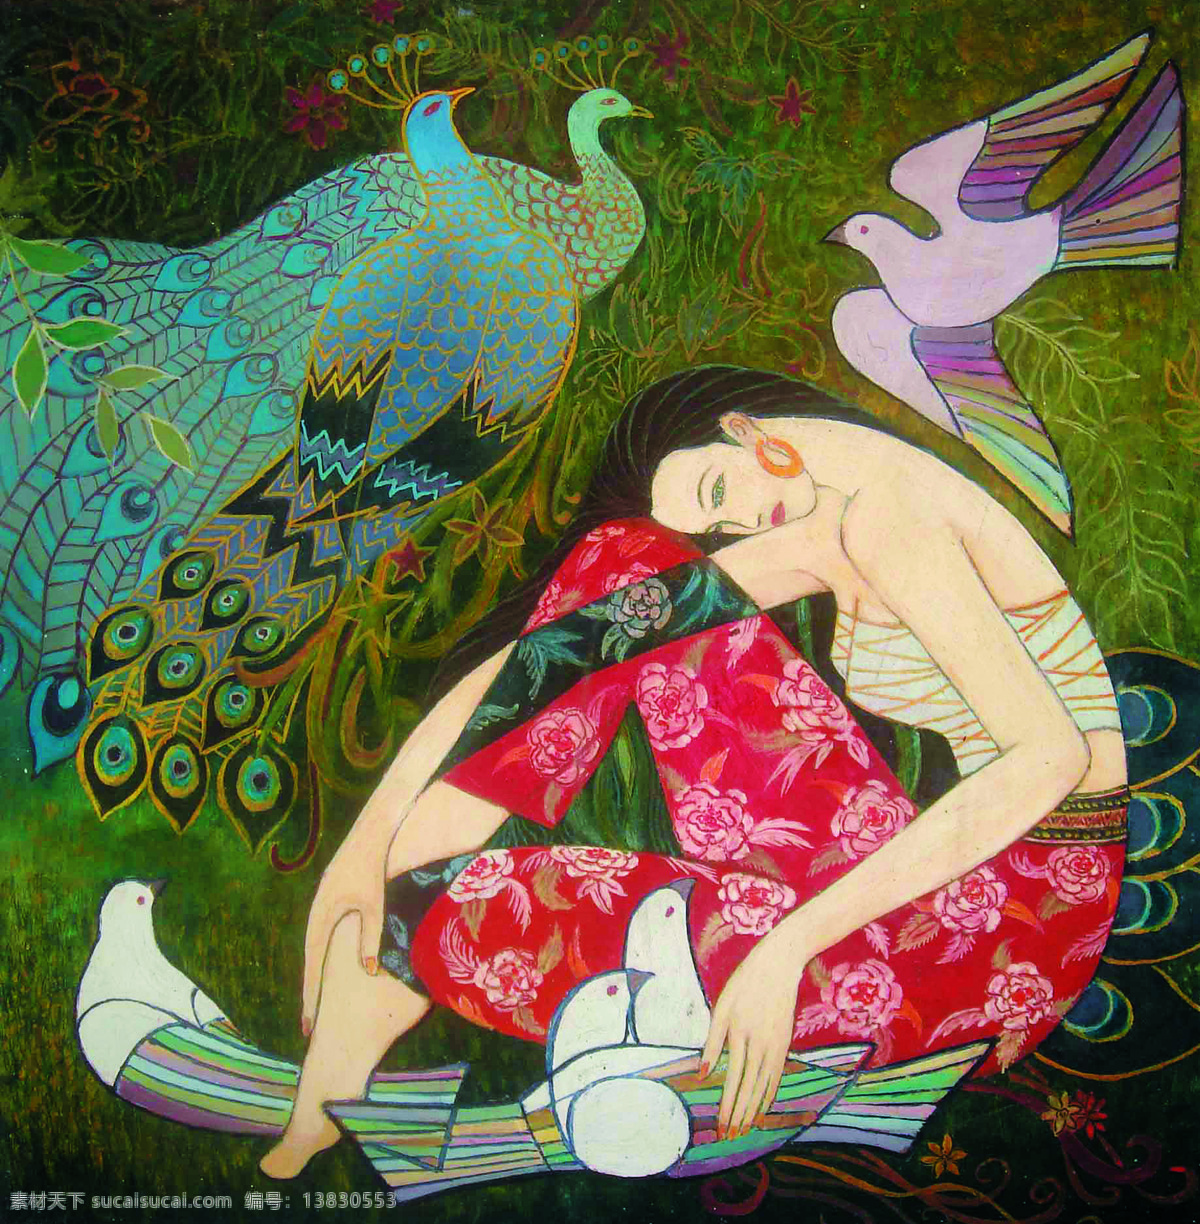 温馨家园 美术 油画 人物画 女人 女子 丽人 孔雀 鸽子 花草 树林 油画作品83 文化艺术 绘画书法